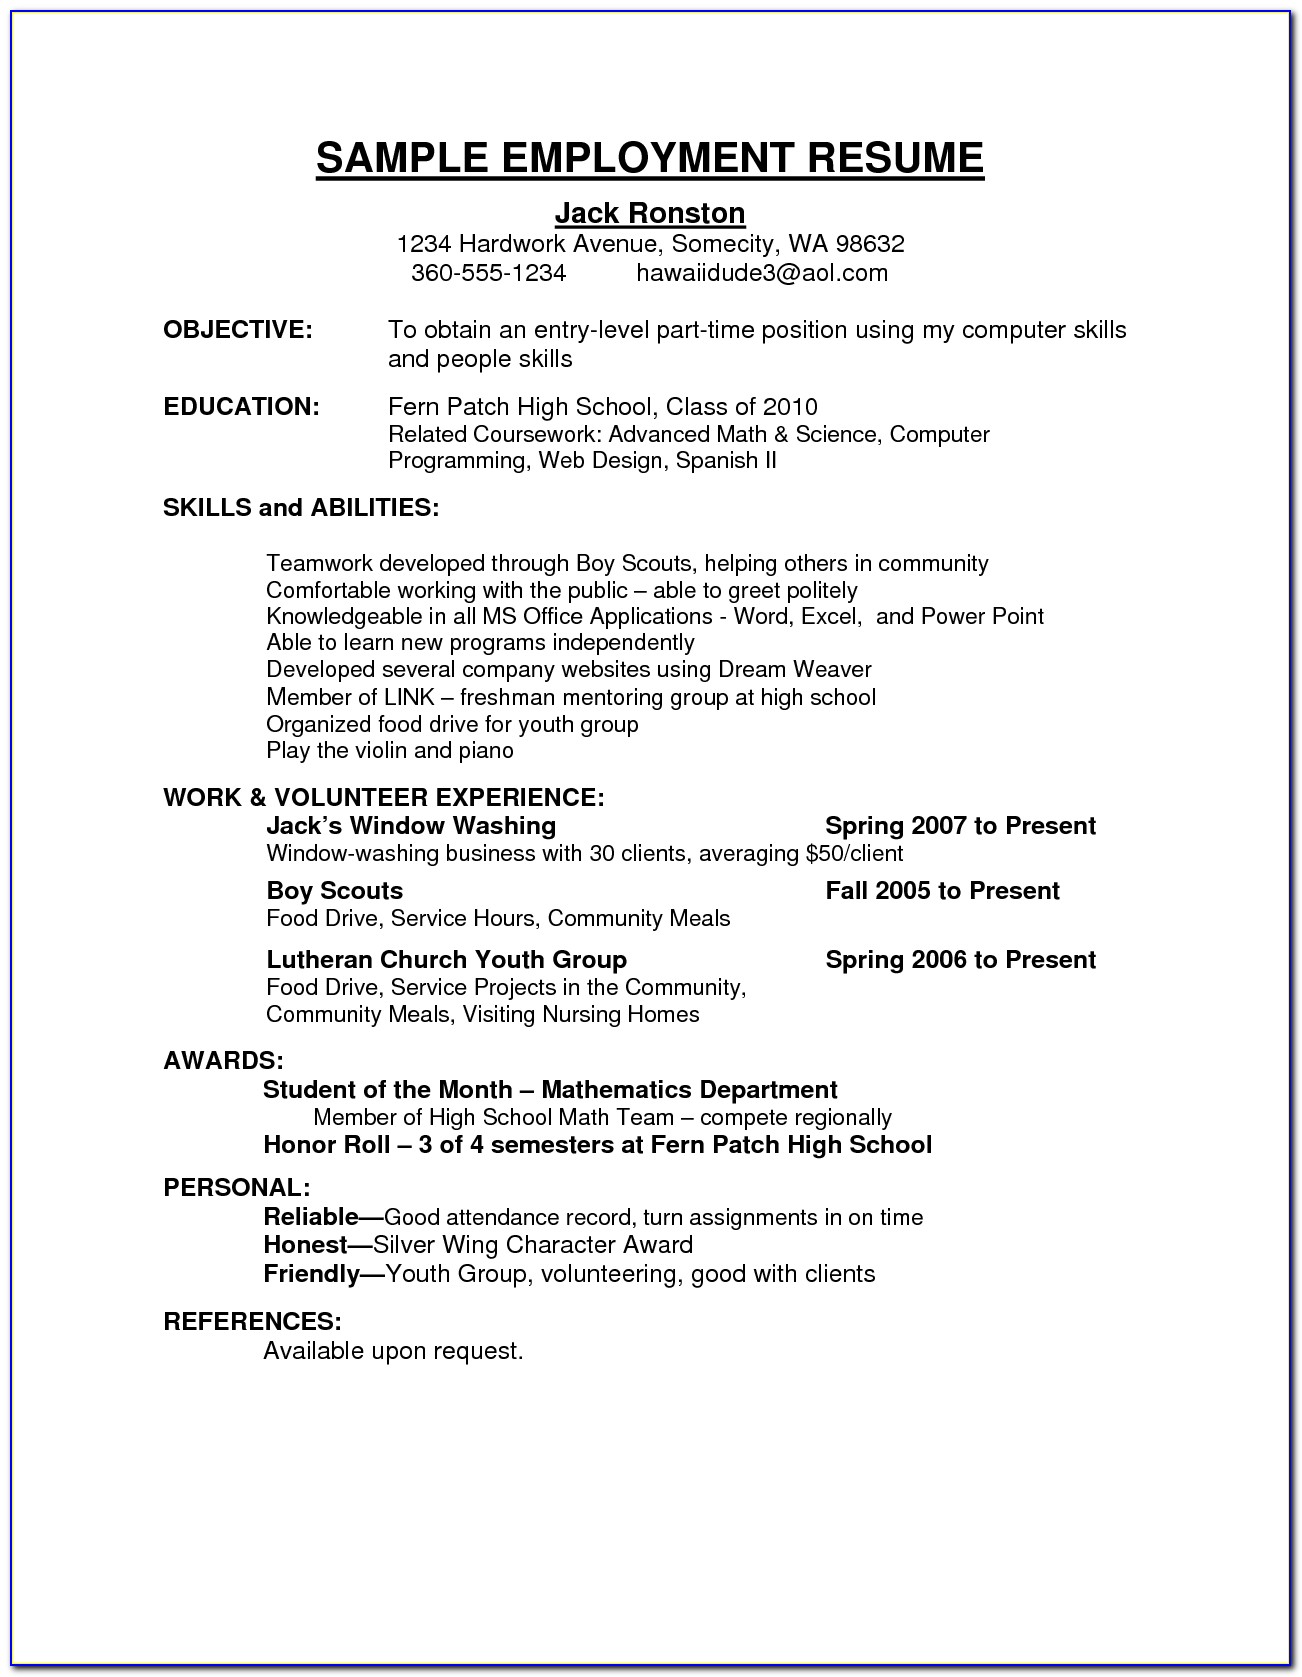 Sample Resume For Jobs In Australia